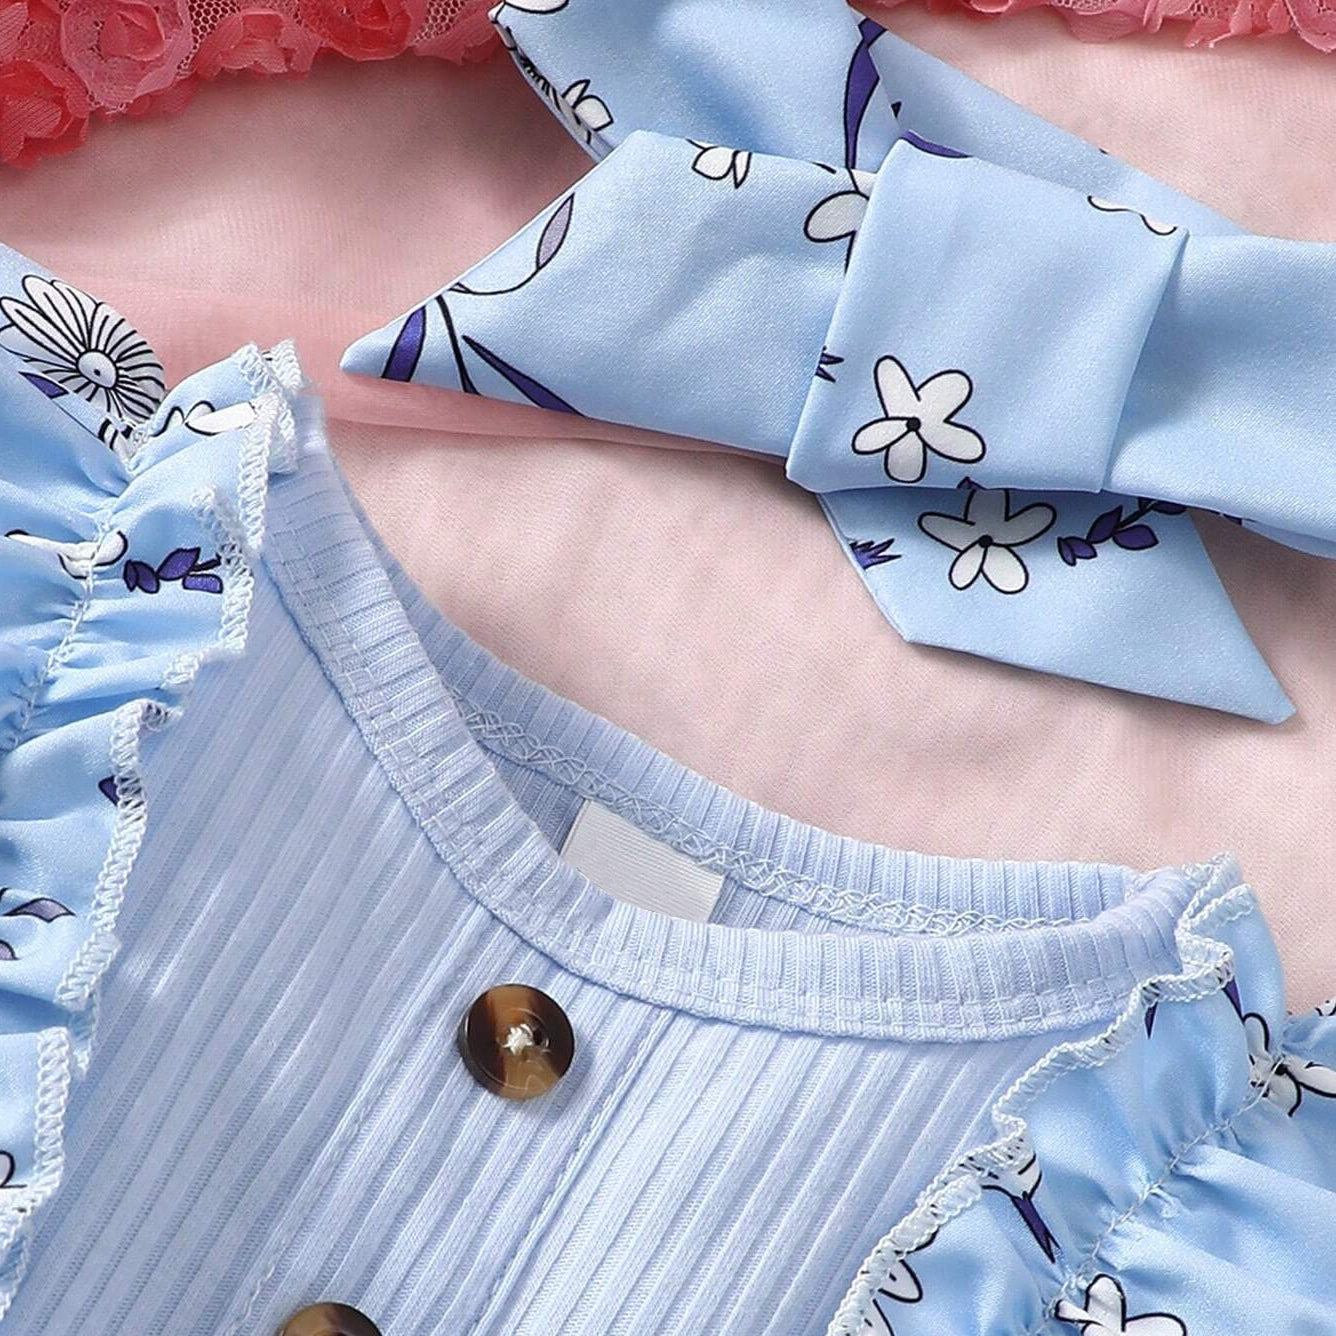 Elegant Floral Printed Sleeveless Baby Jumpsuit